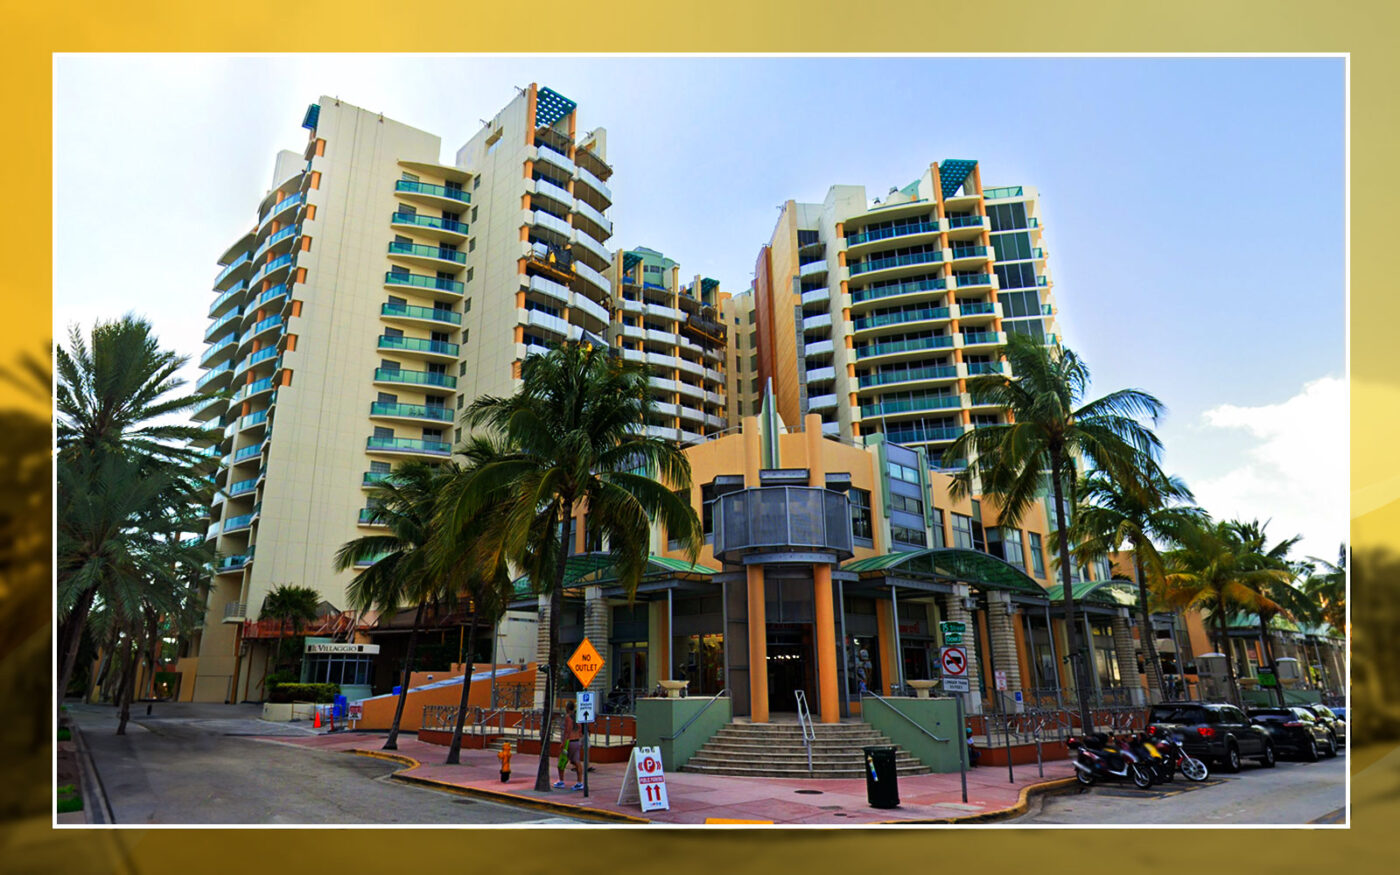 Miami-Dade County Condo Sales Drop Over Christmas